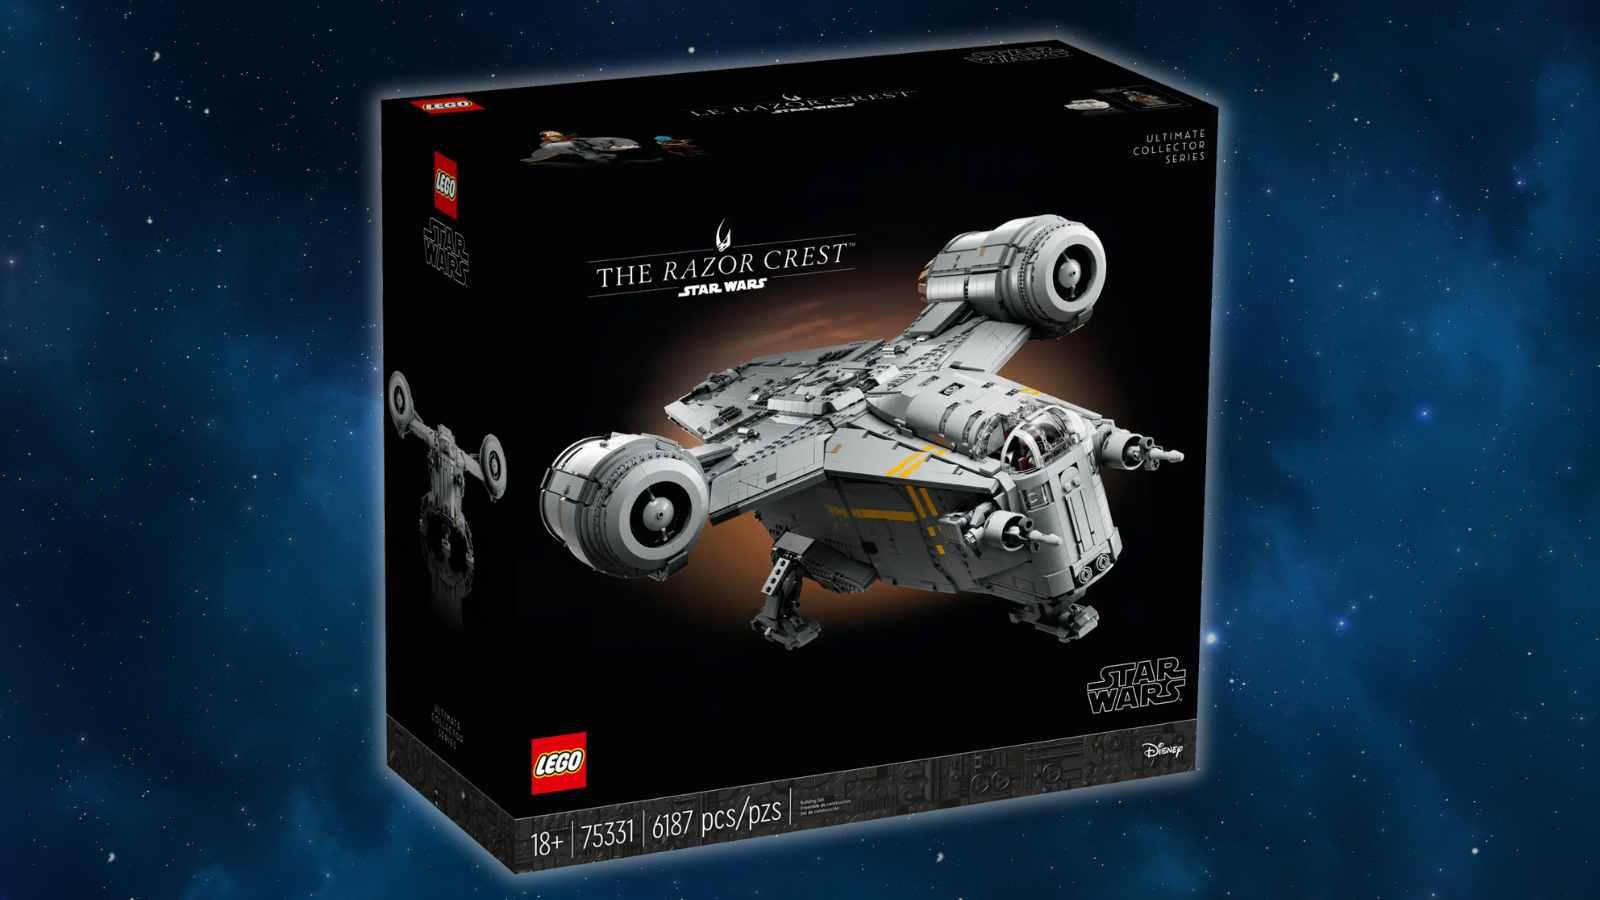 LEGO Star Wars The Razor Crest on a galaxy background